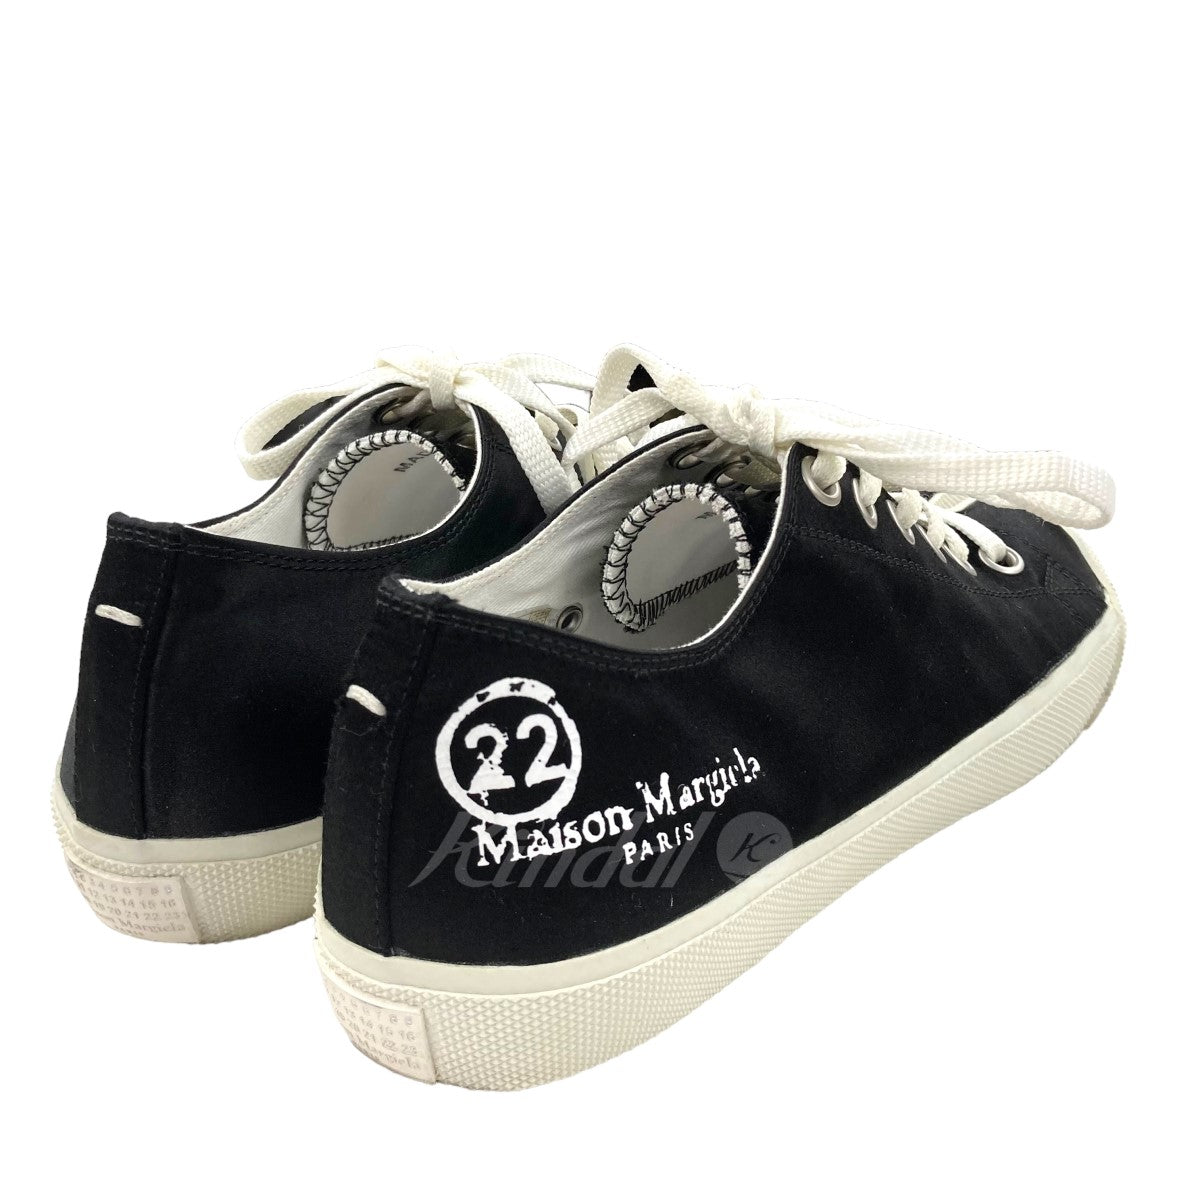 得価本物保証Maison Margiela 22 ローカット キャンバス スニーカー BK 靴